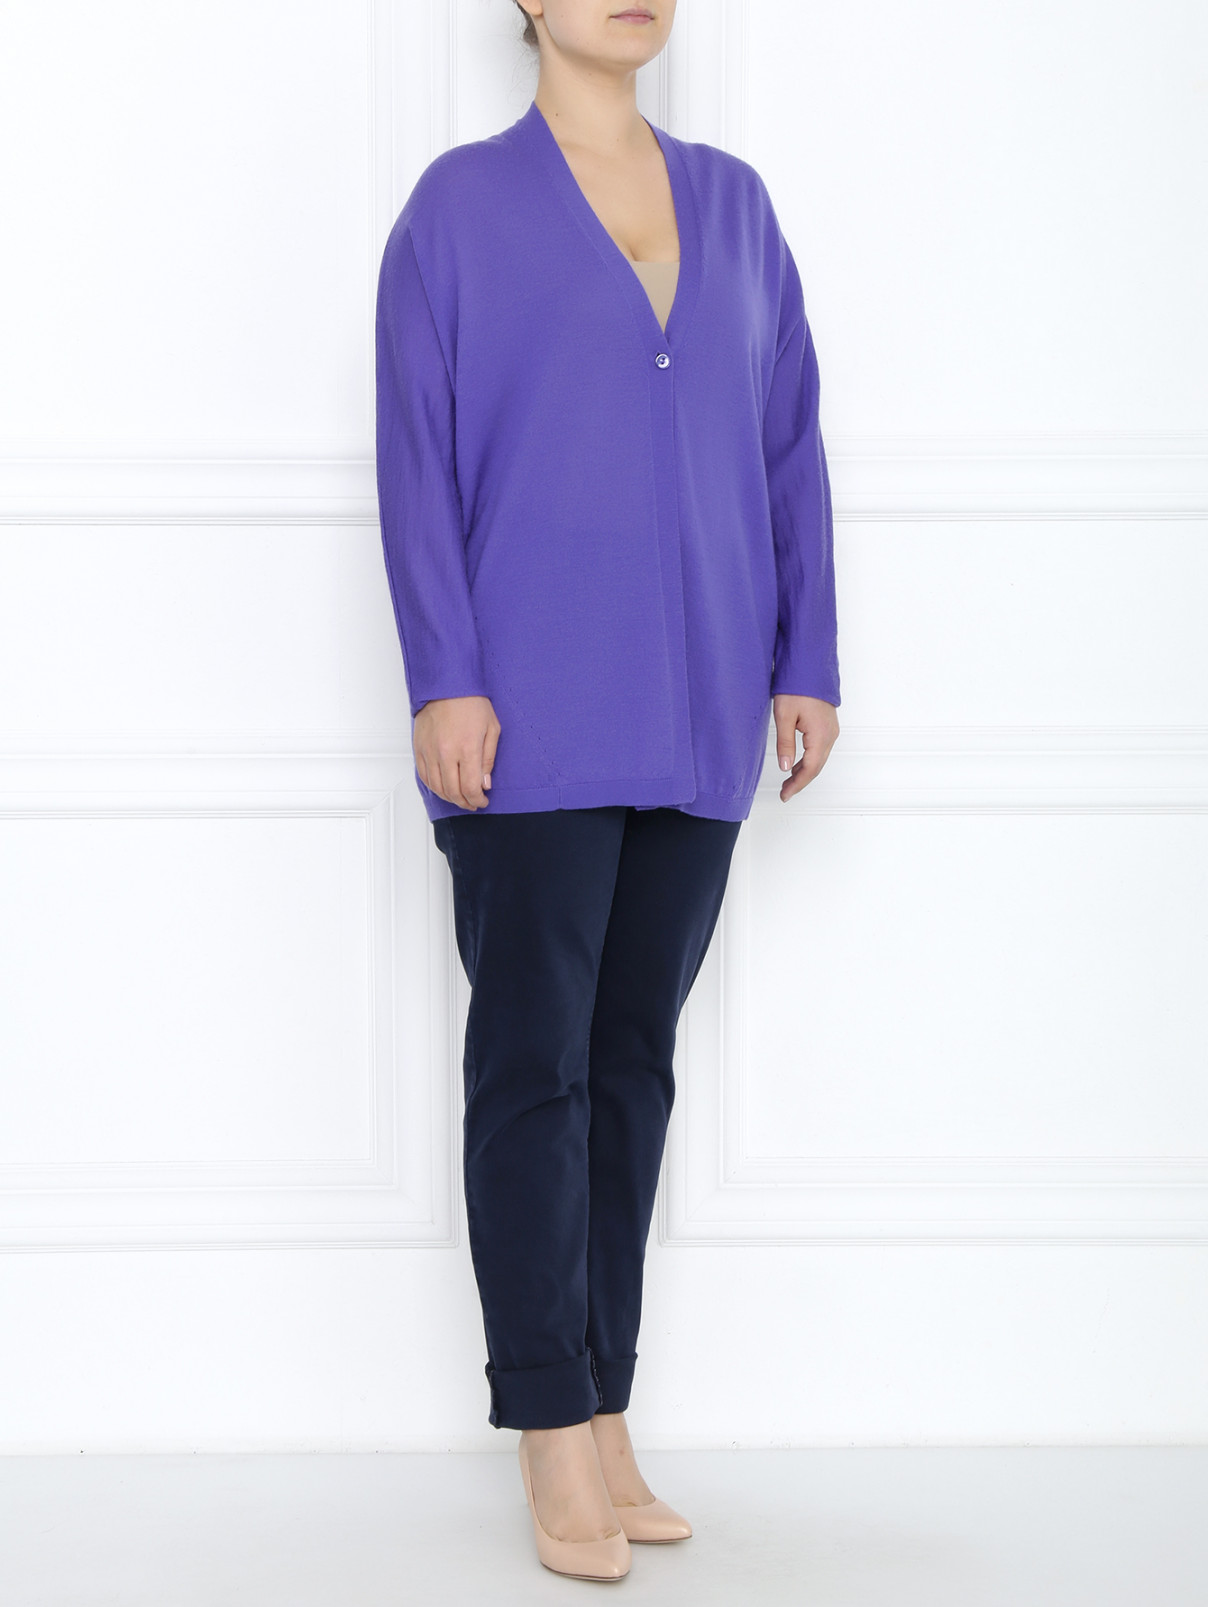 Кардиган из шерсти свободного кроя Marina Rinaldi  –  Модель Общий вид  – Цвет:  Фиолетовый